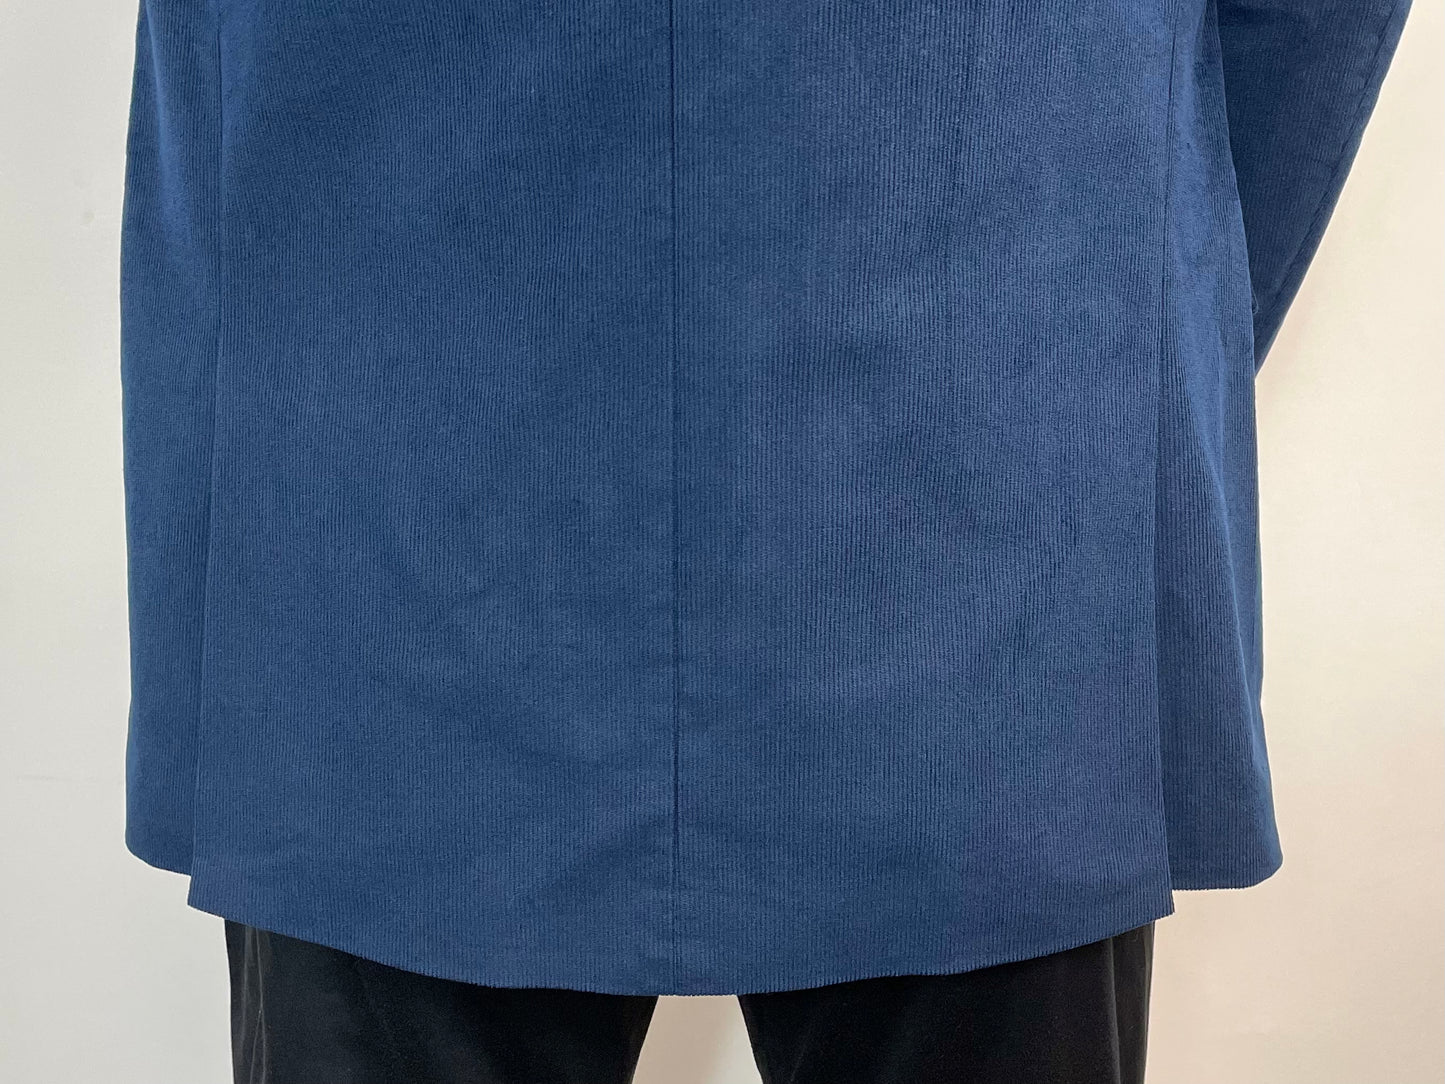 Bar III Men’s Linen Cotton Suit Jacket Blazer Sport Coat in Blue